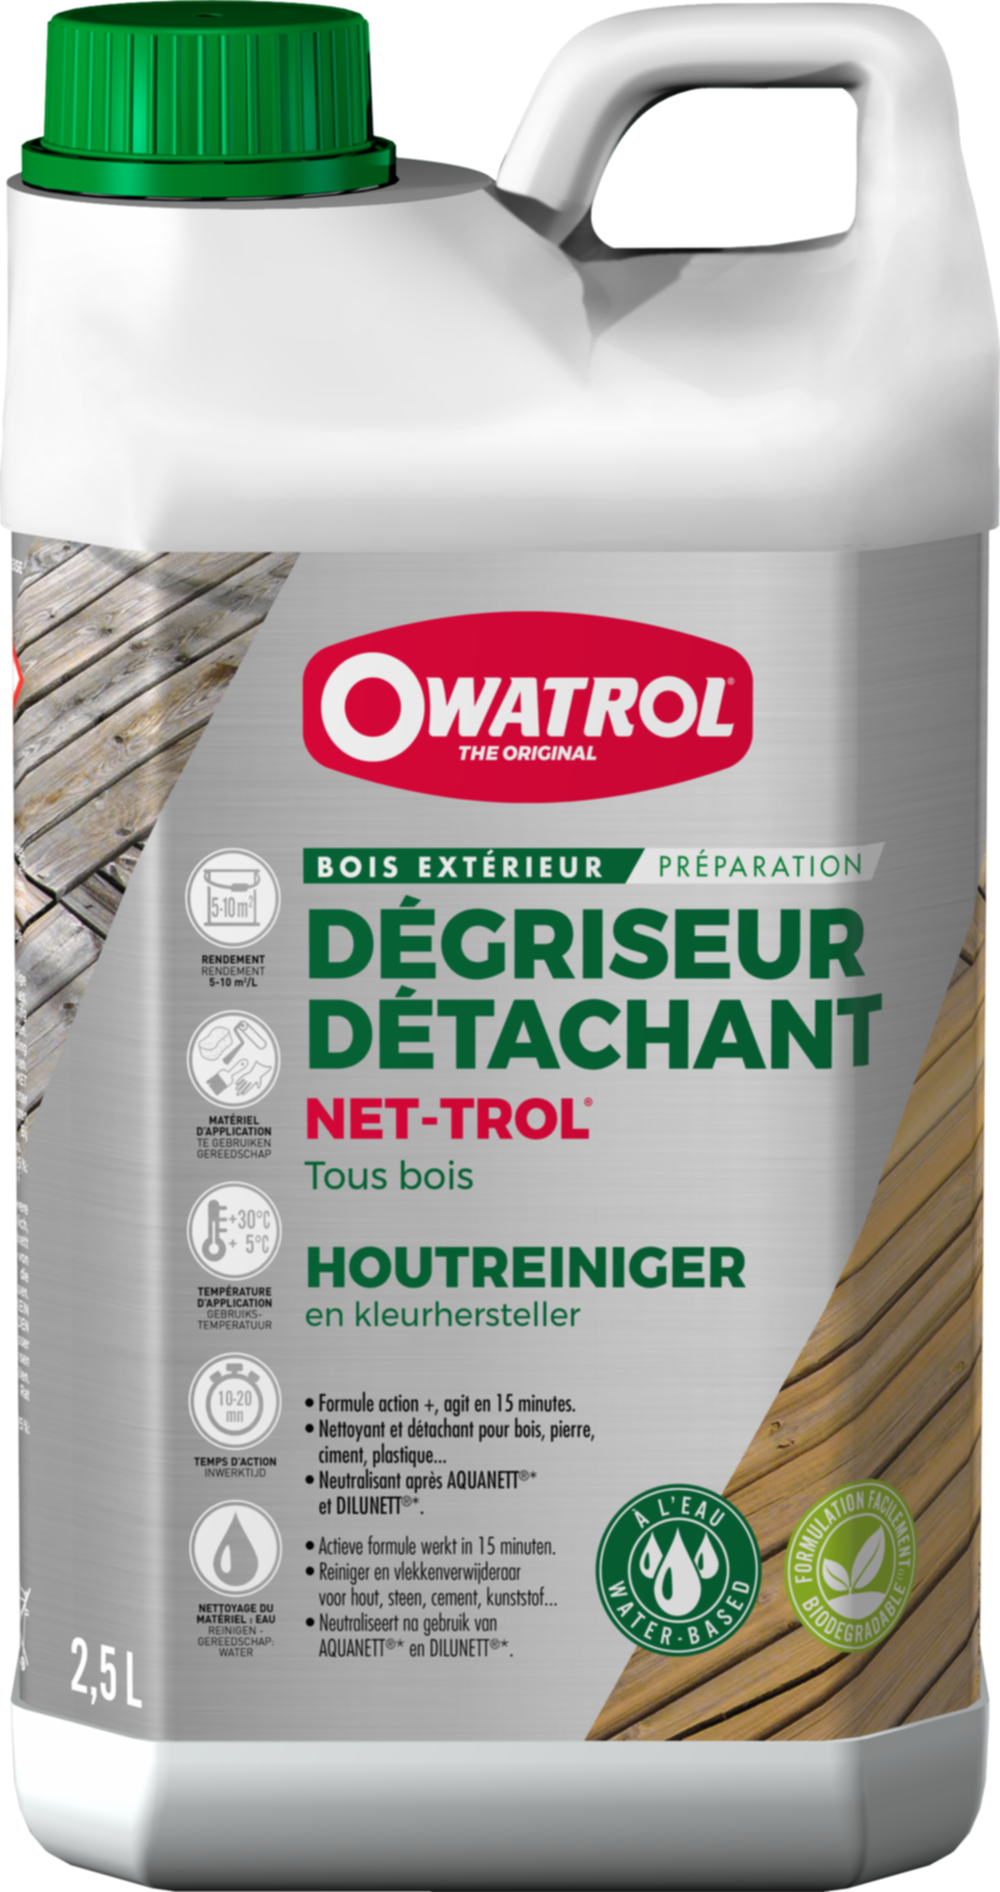 Dégriseur neutralisant gélifié Net-Trol bois 2,5 L - OWATROL